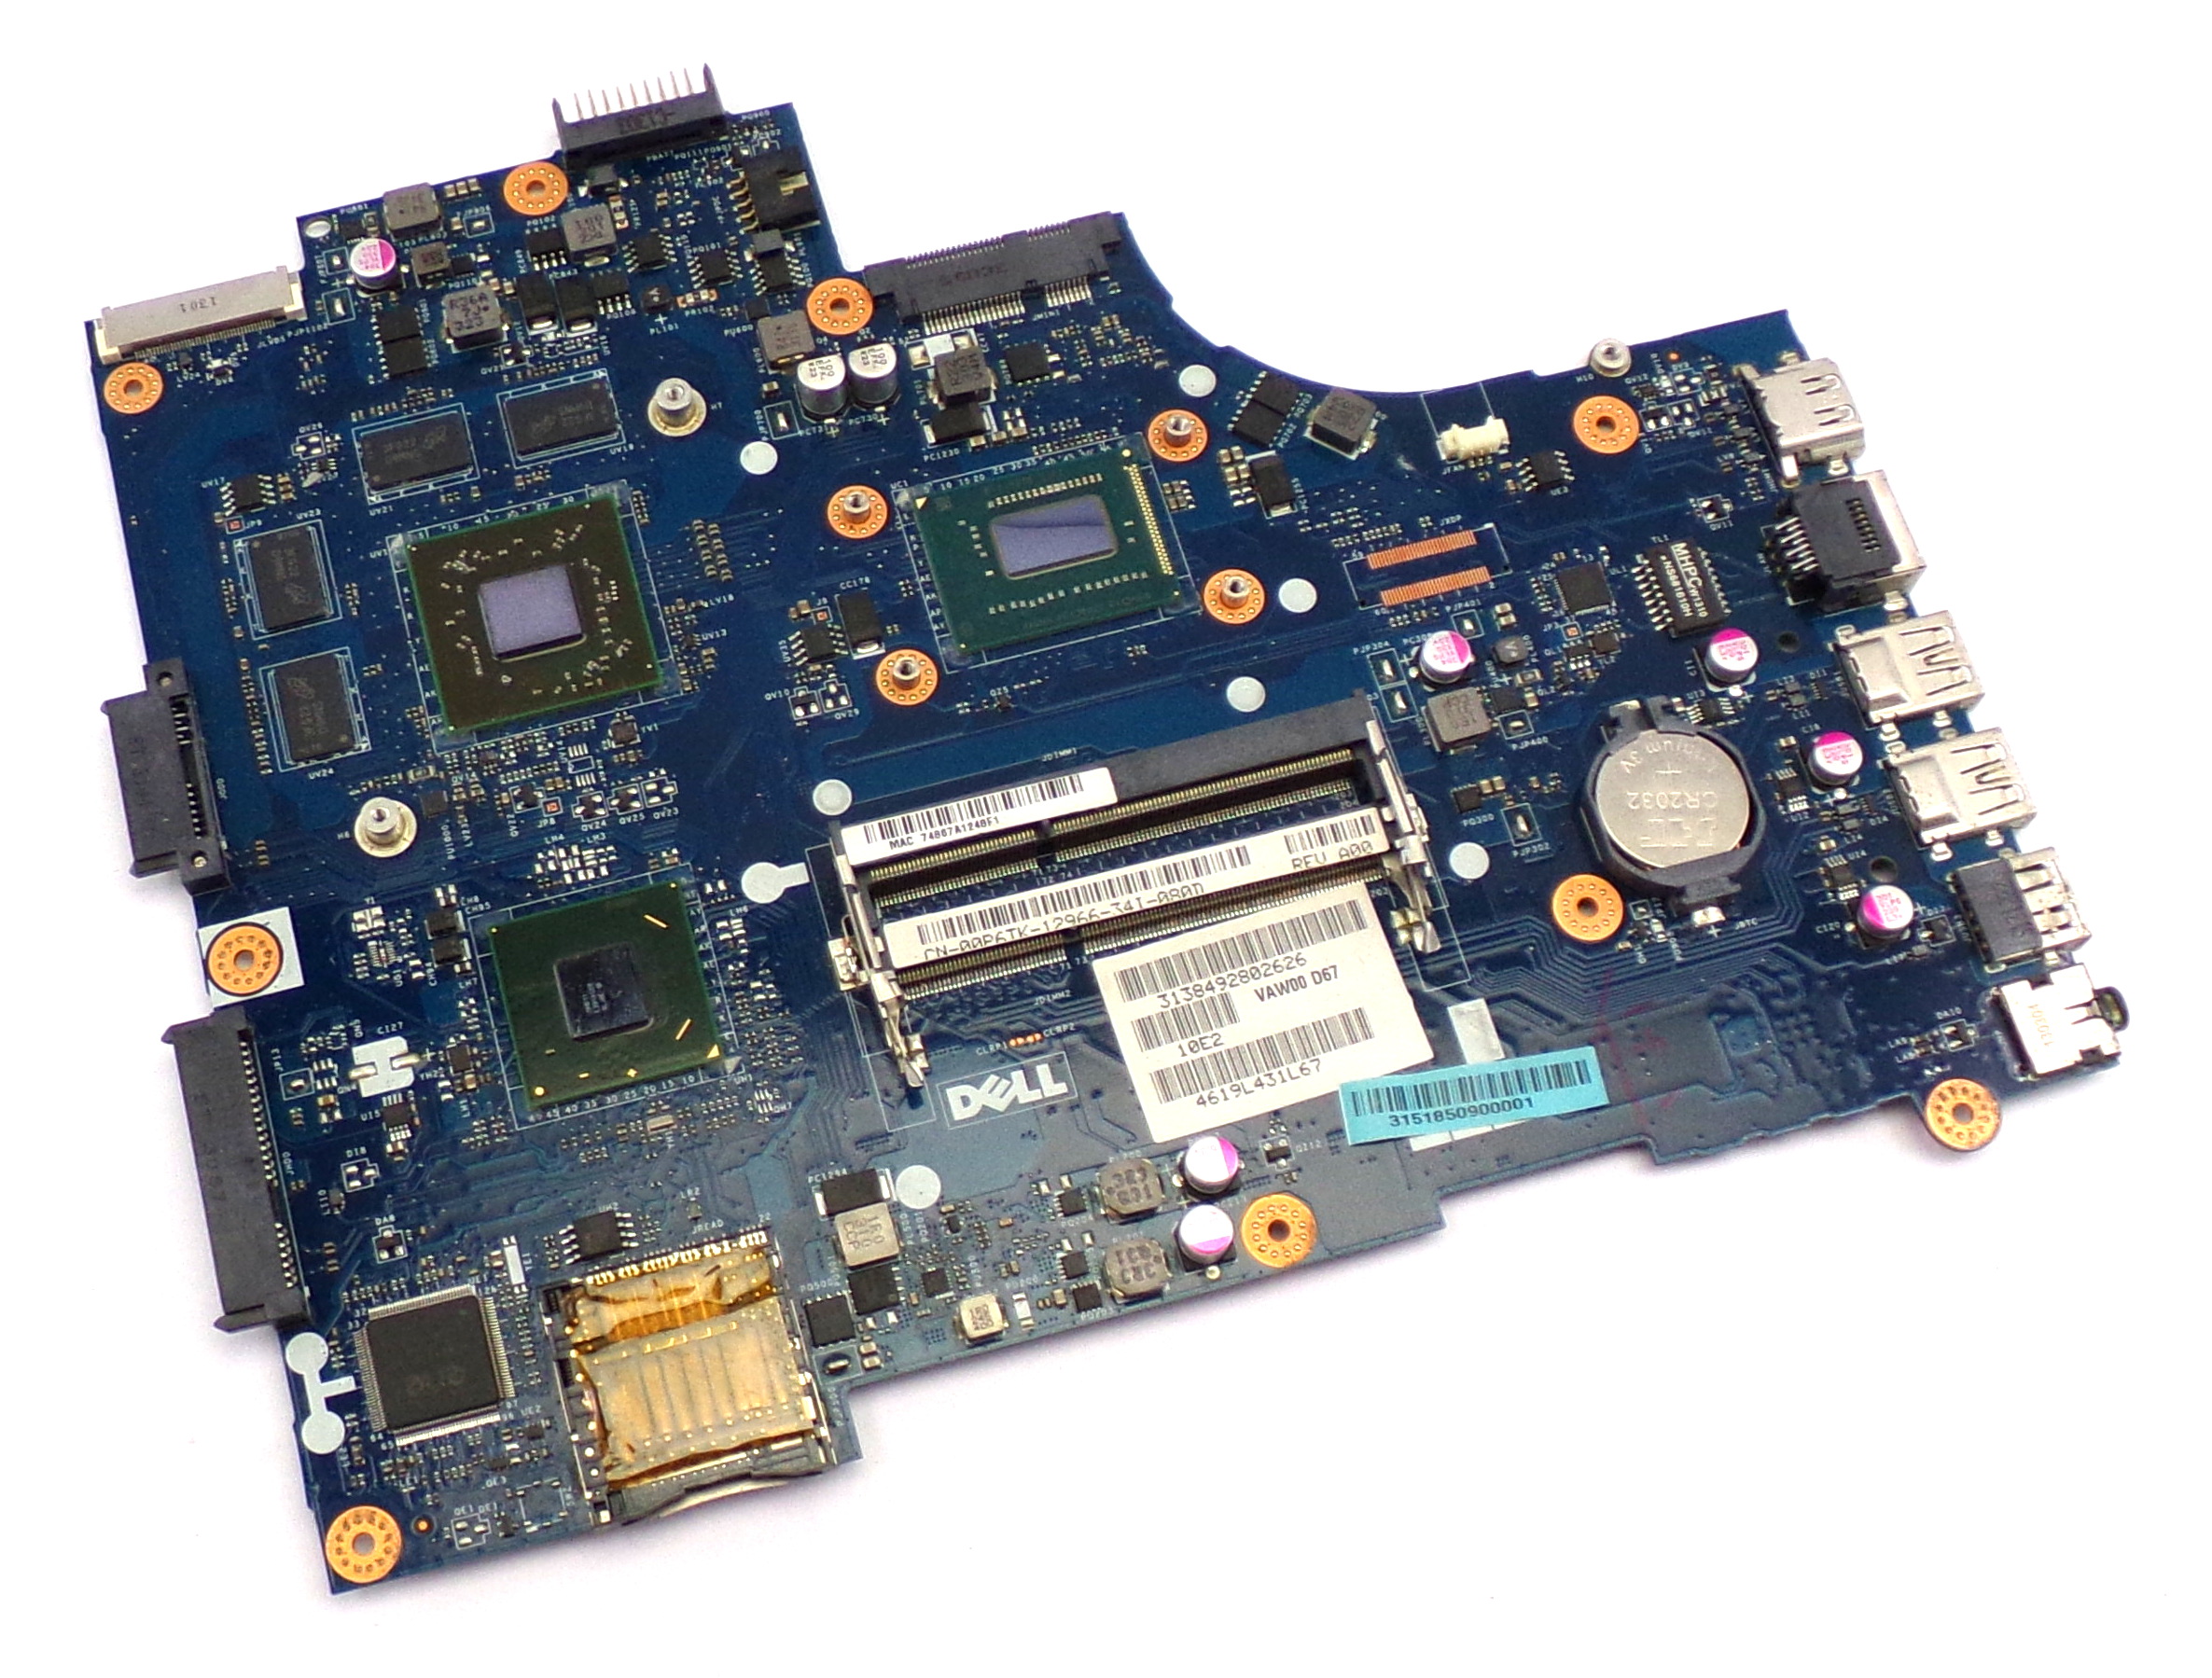 DEI3521 - Dell Inspiron 15 3521 Laptop Motherboard w/Intel i3-3227u 1